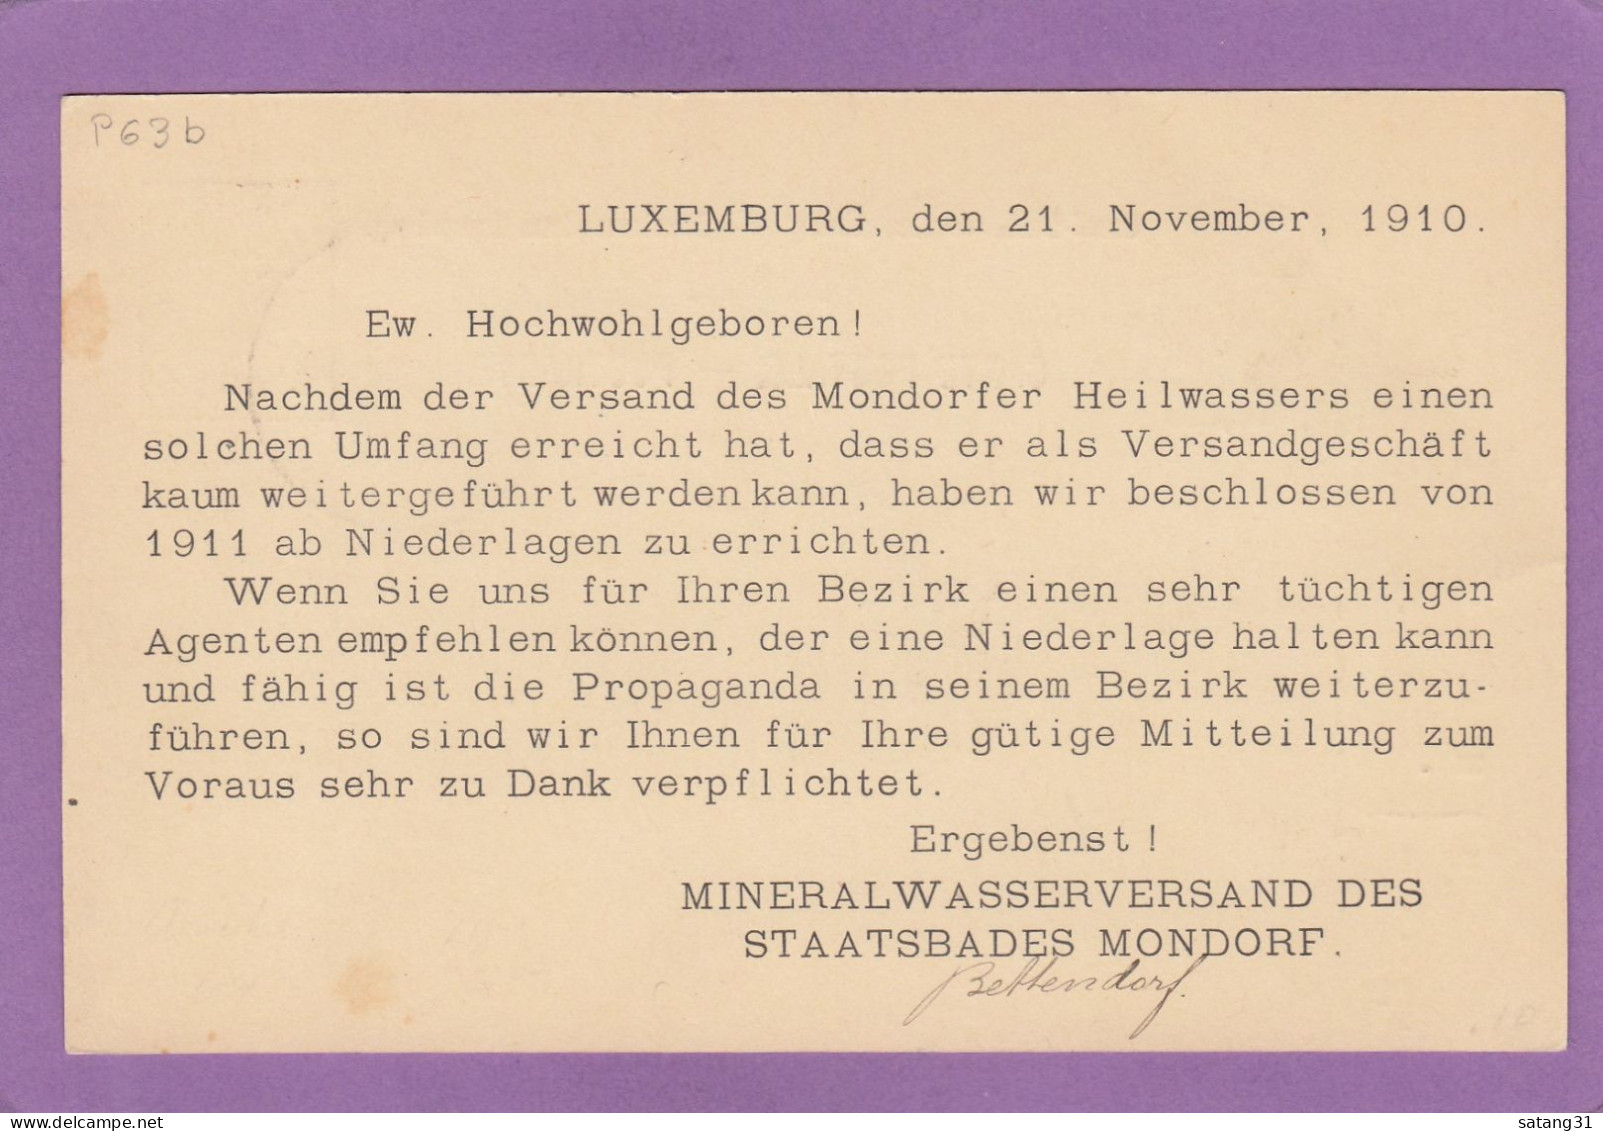 MINERALWASSERVERBAND DES STAATSBADES MONDORF. GANZSACHE NACH TORGAU,DEUTSCHLAND,1910. - Postwaardestukken